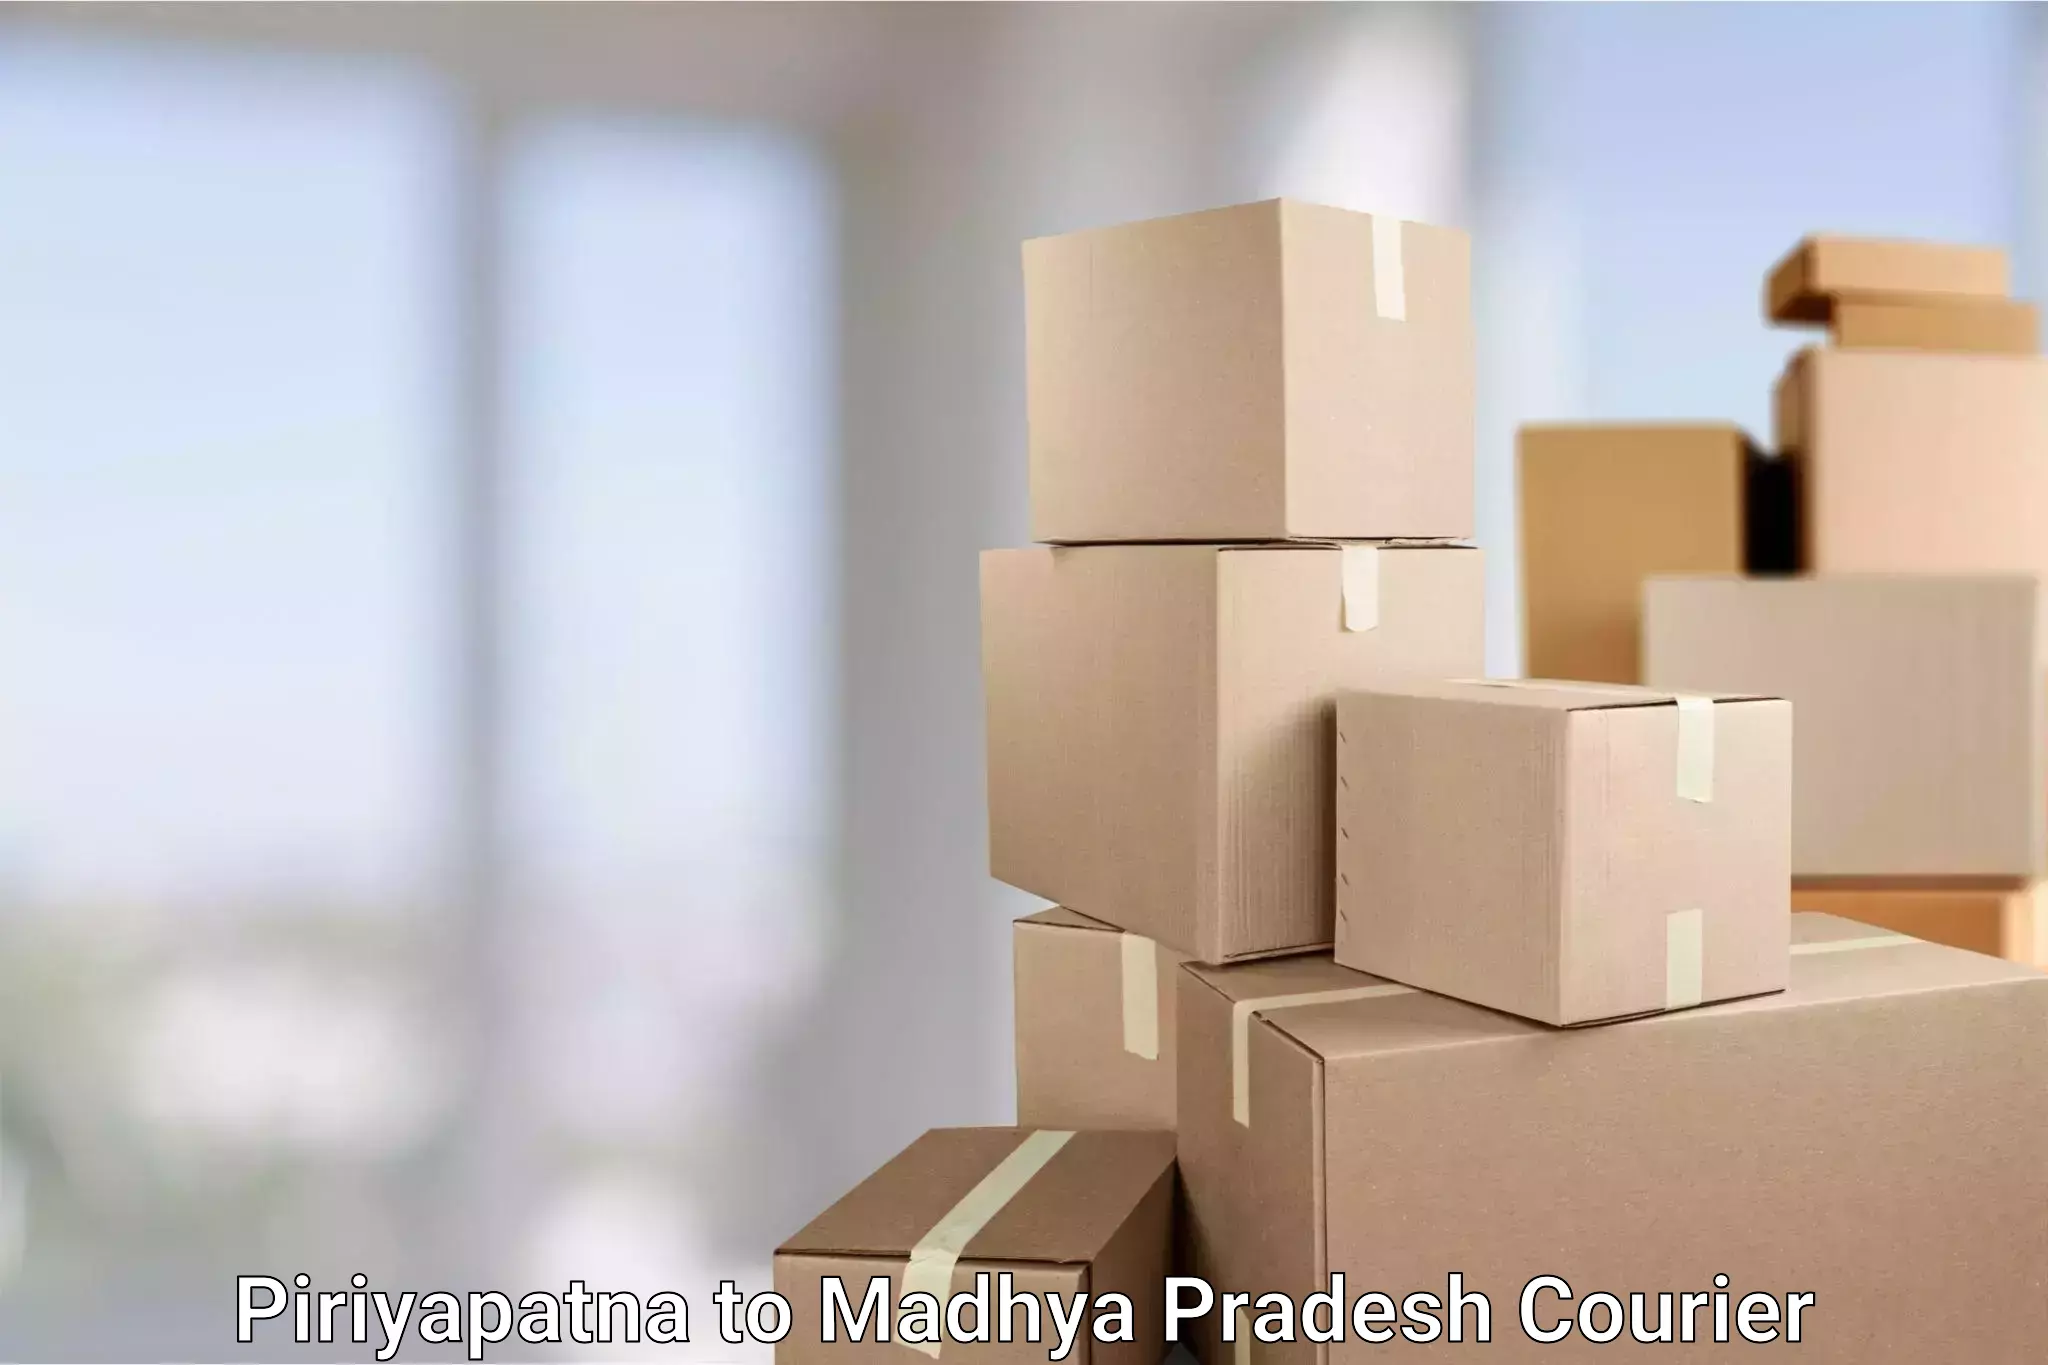 Supply chain delivery Piriyapatna to Madhya Pradesh